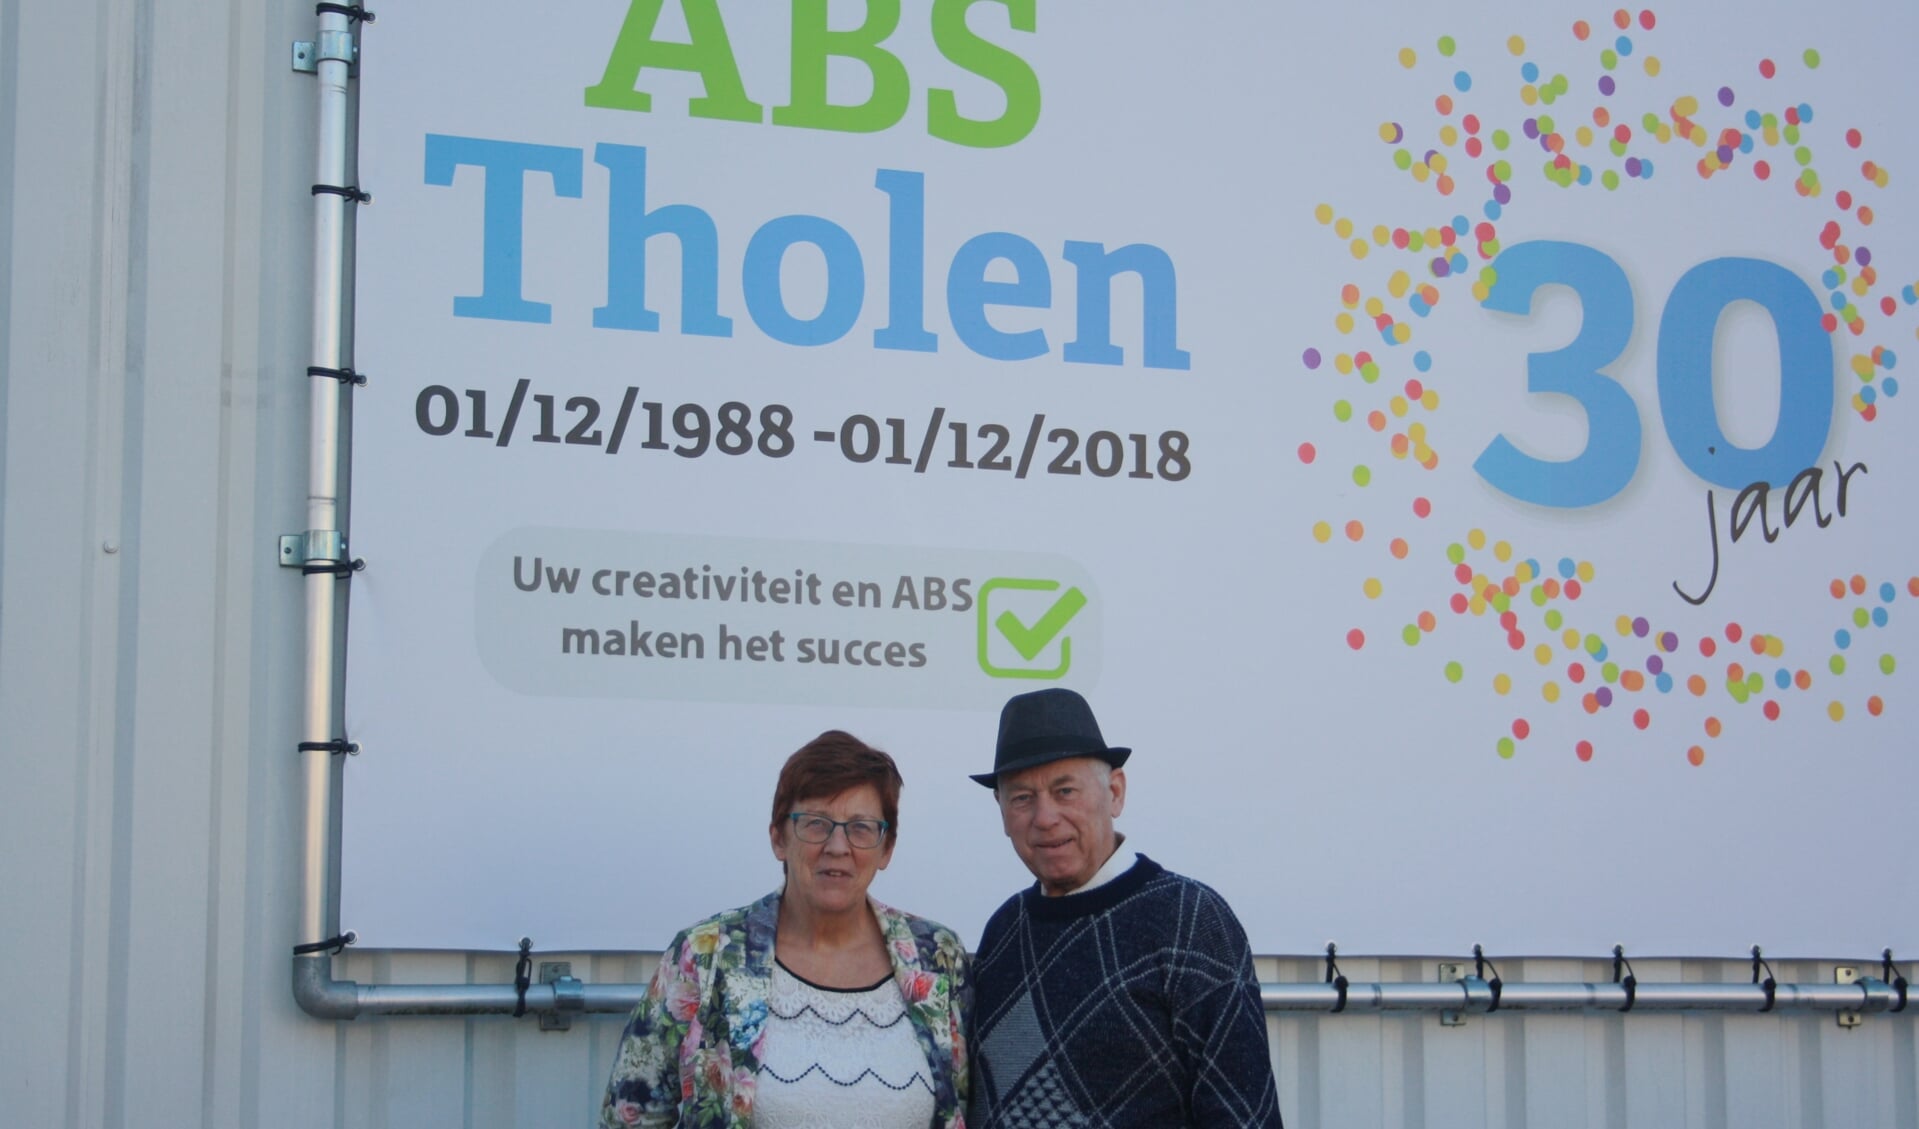 Adrie en Henk de Ruiter vieren het dertig jarig bestaan van ABS Tholen. FOTO FRITS SIMONS